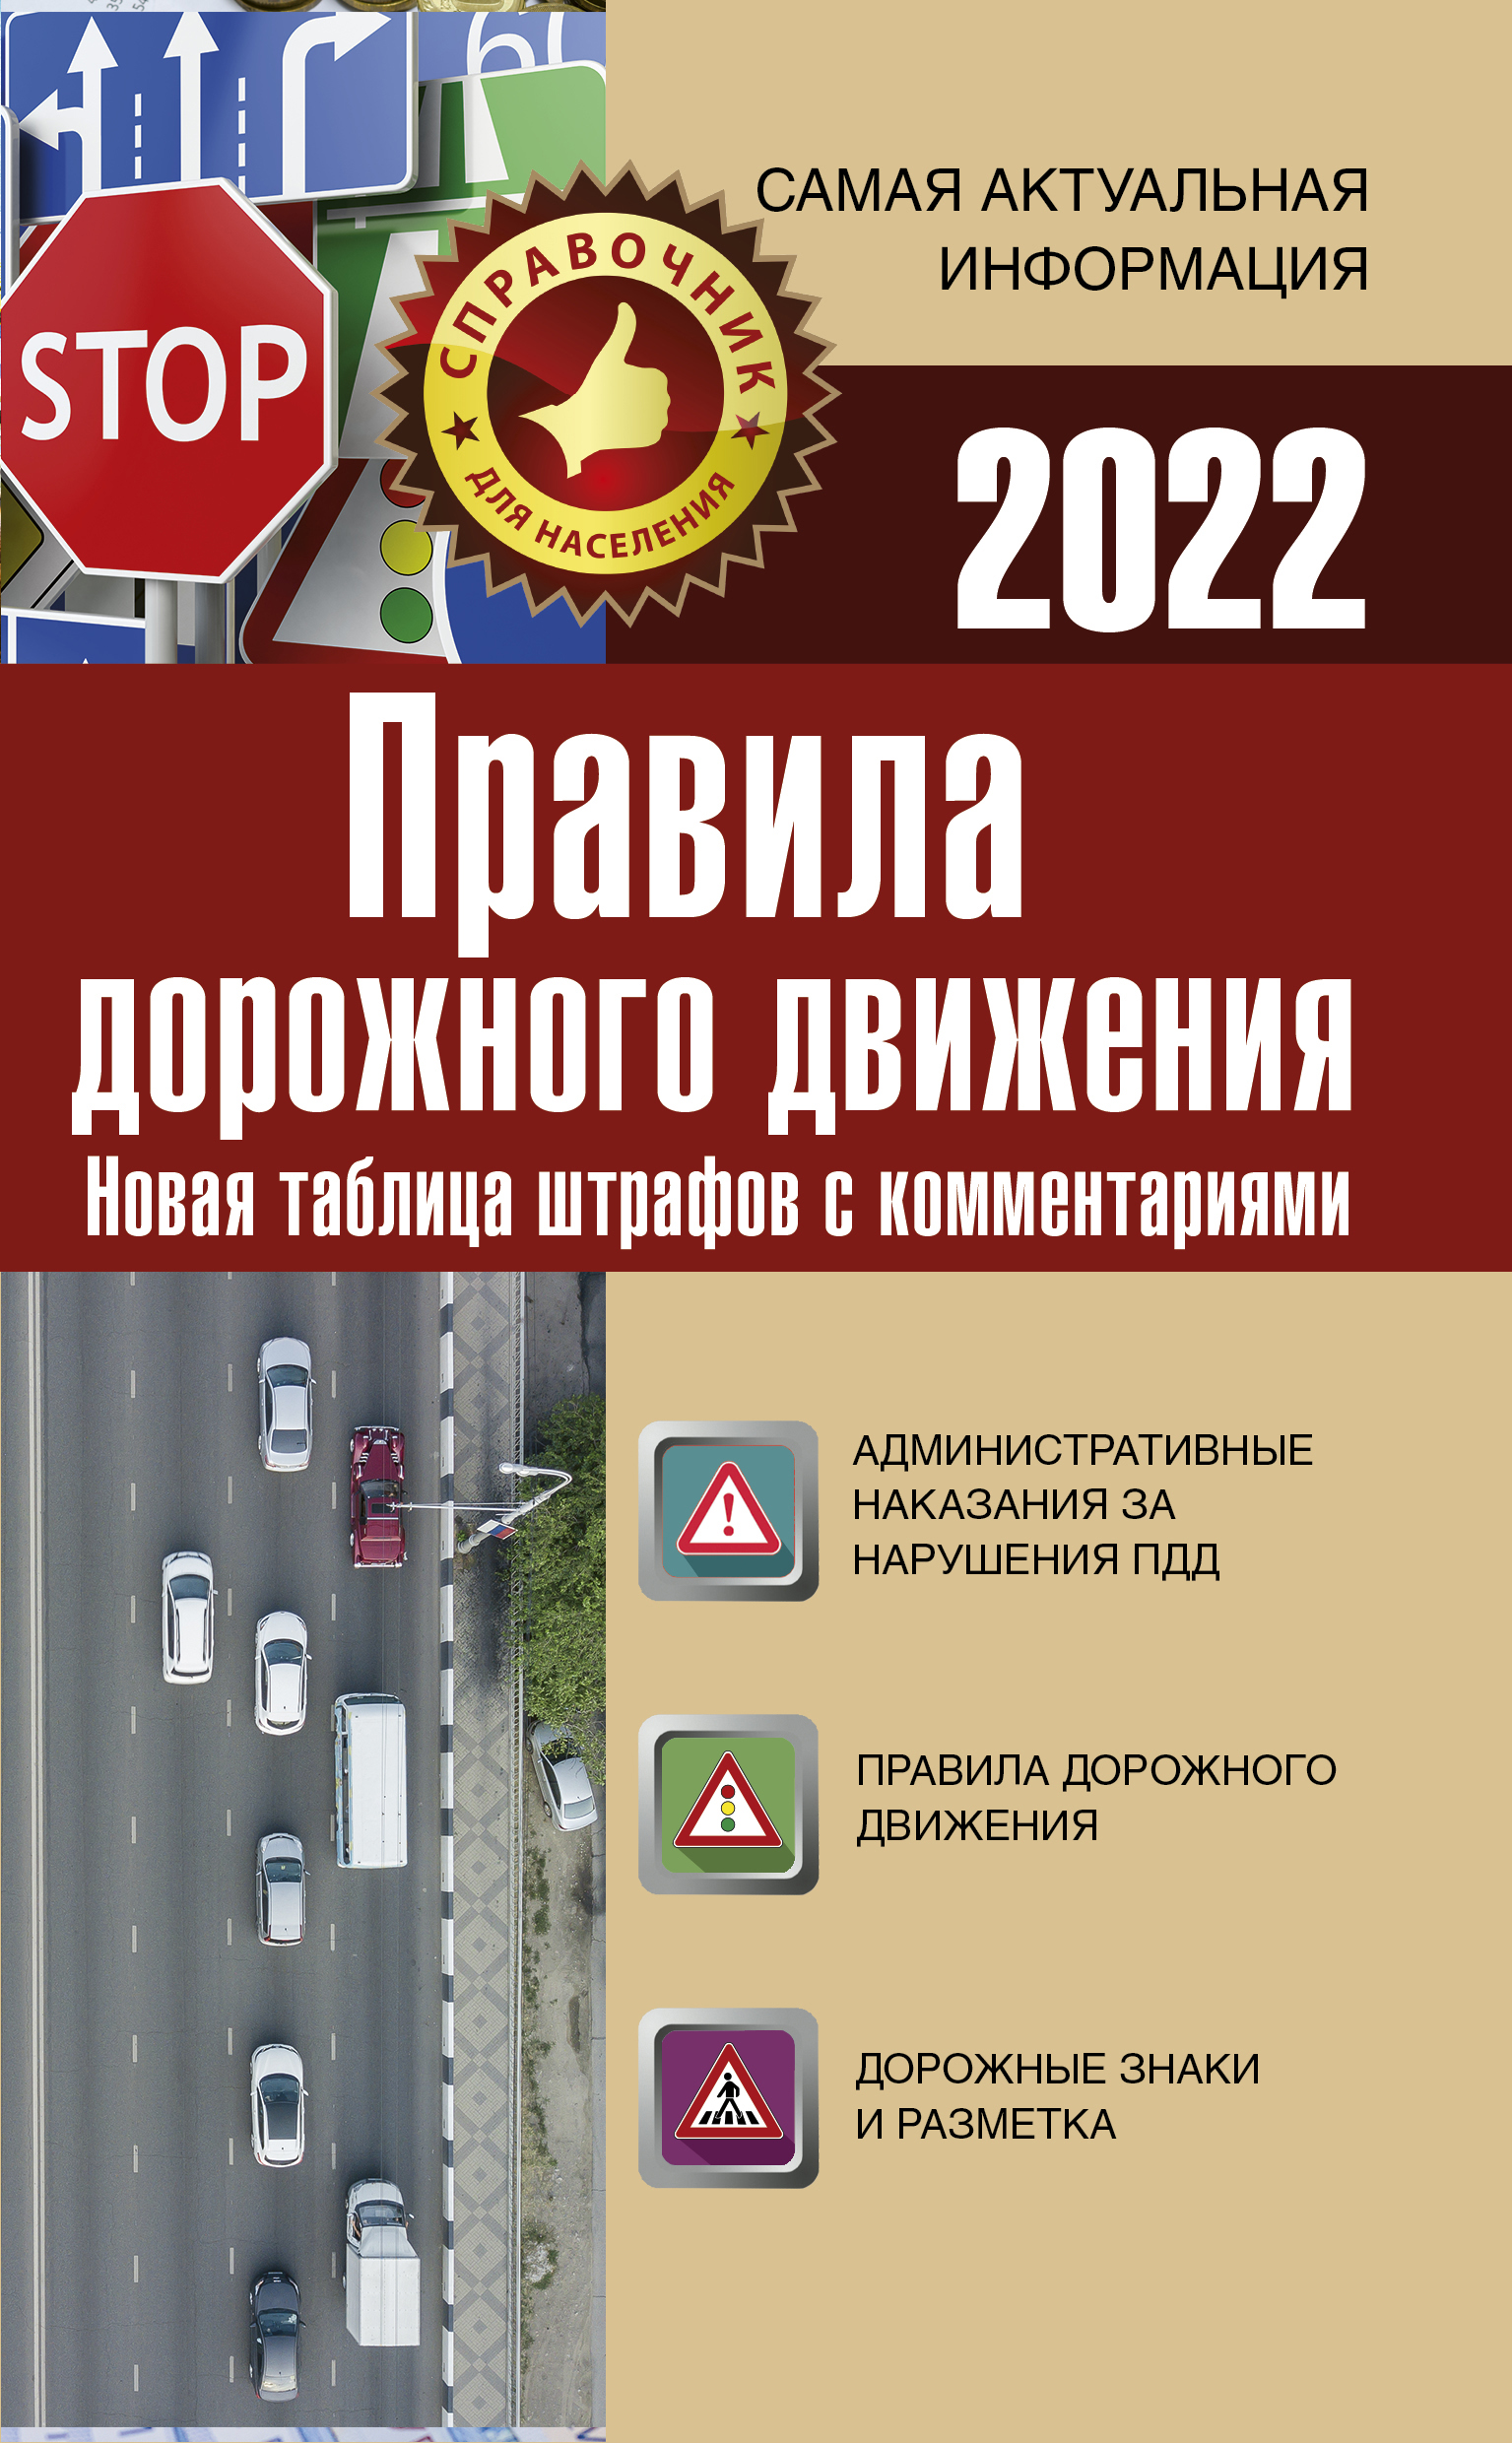 Правила дорожного движения на 2022 год 